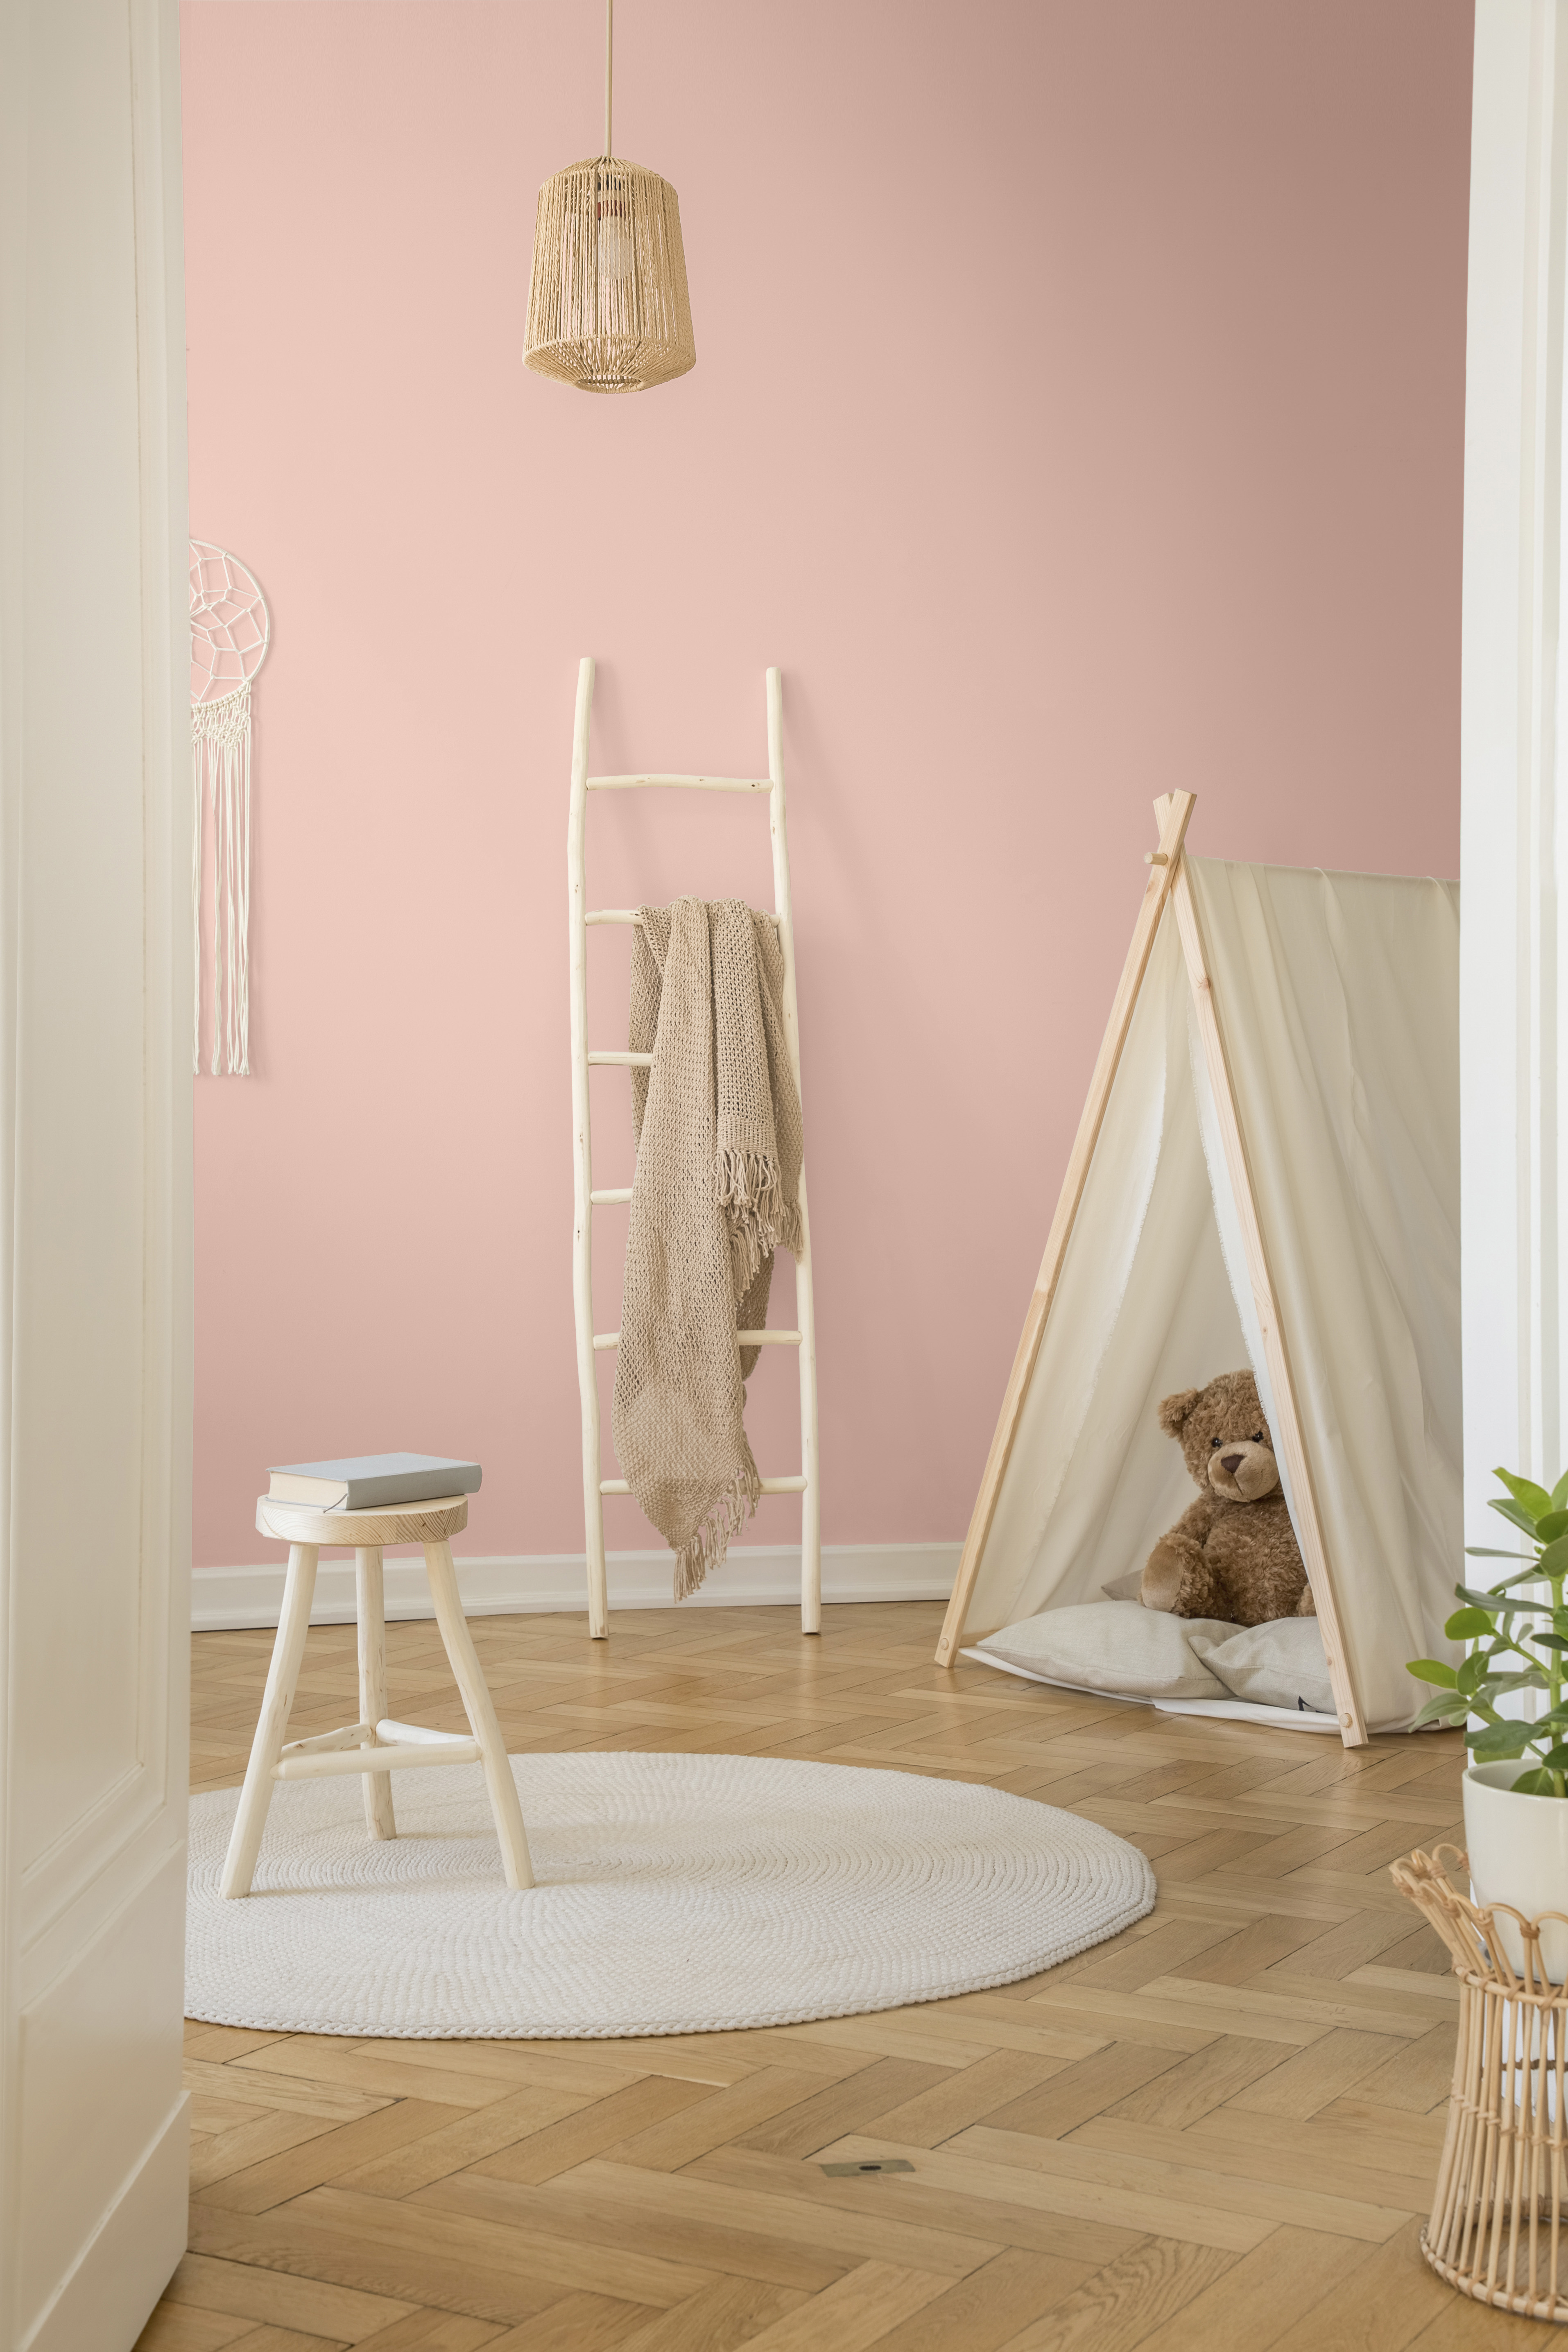 La vue verticale d'une chambre pour bébé blanche d'influence scandinave avec tente, ours en peluche, échelle en bois et couverture beige. Le mur du fond est peinturé en rose clair.